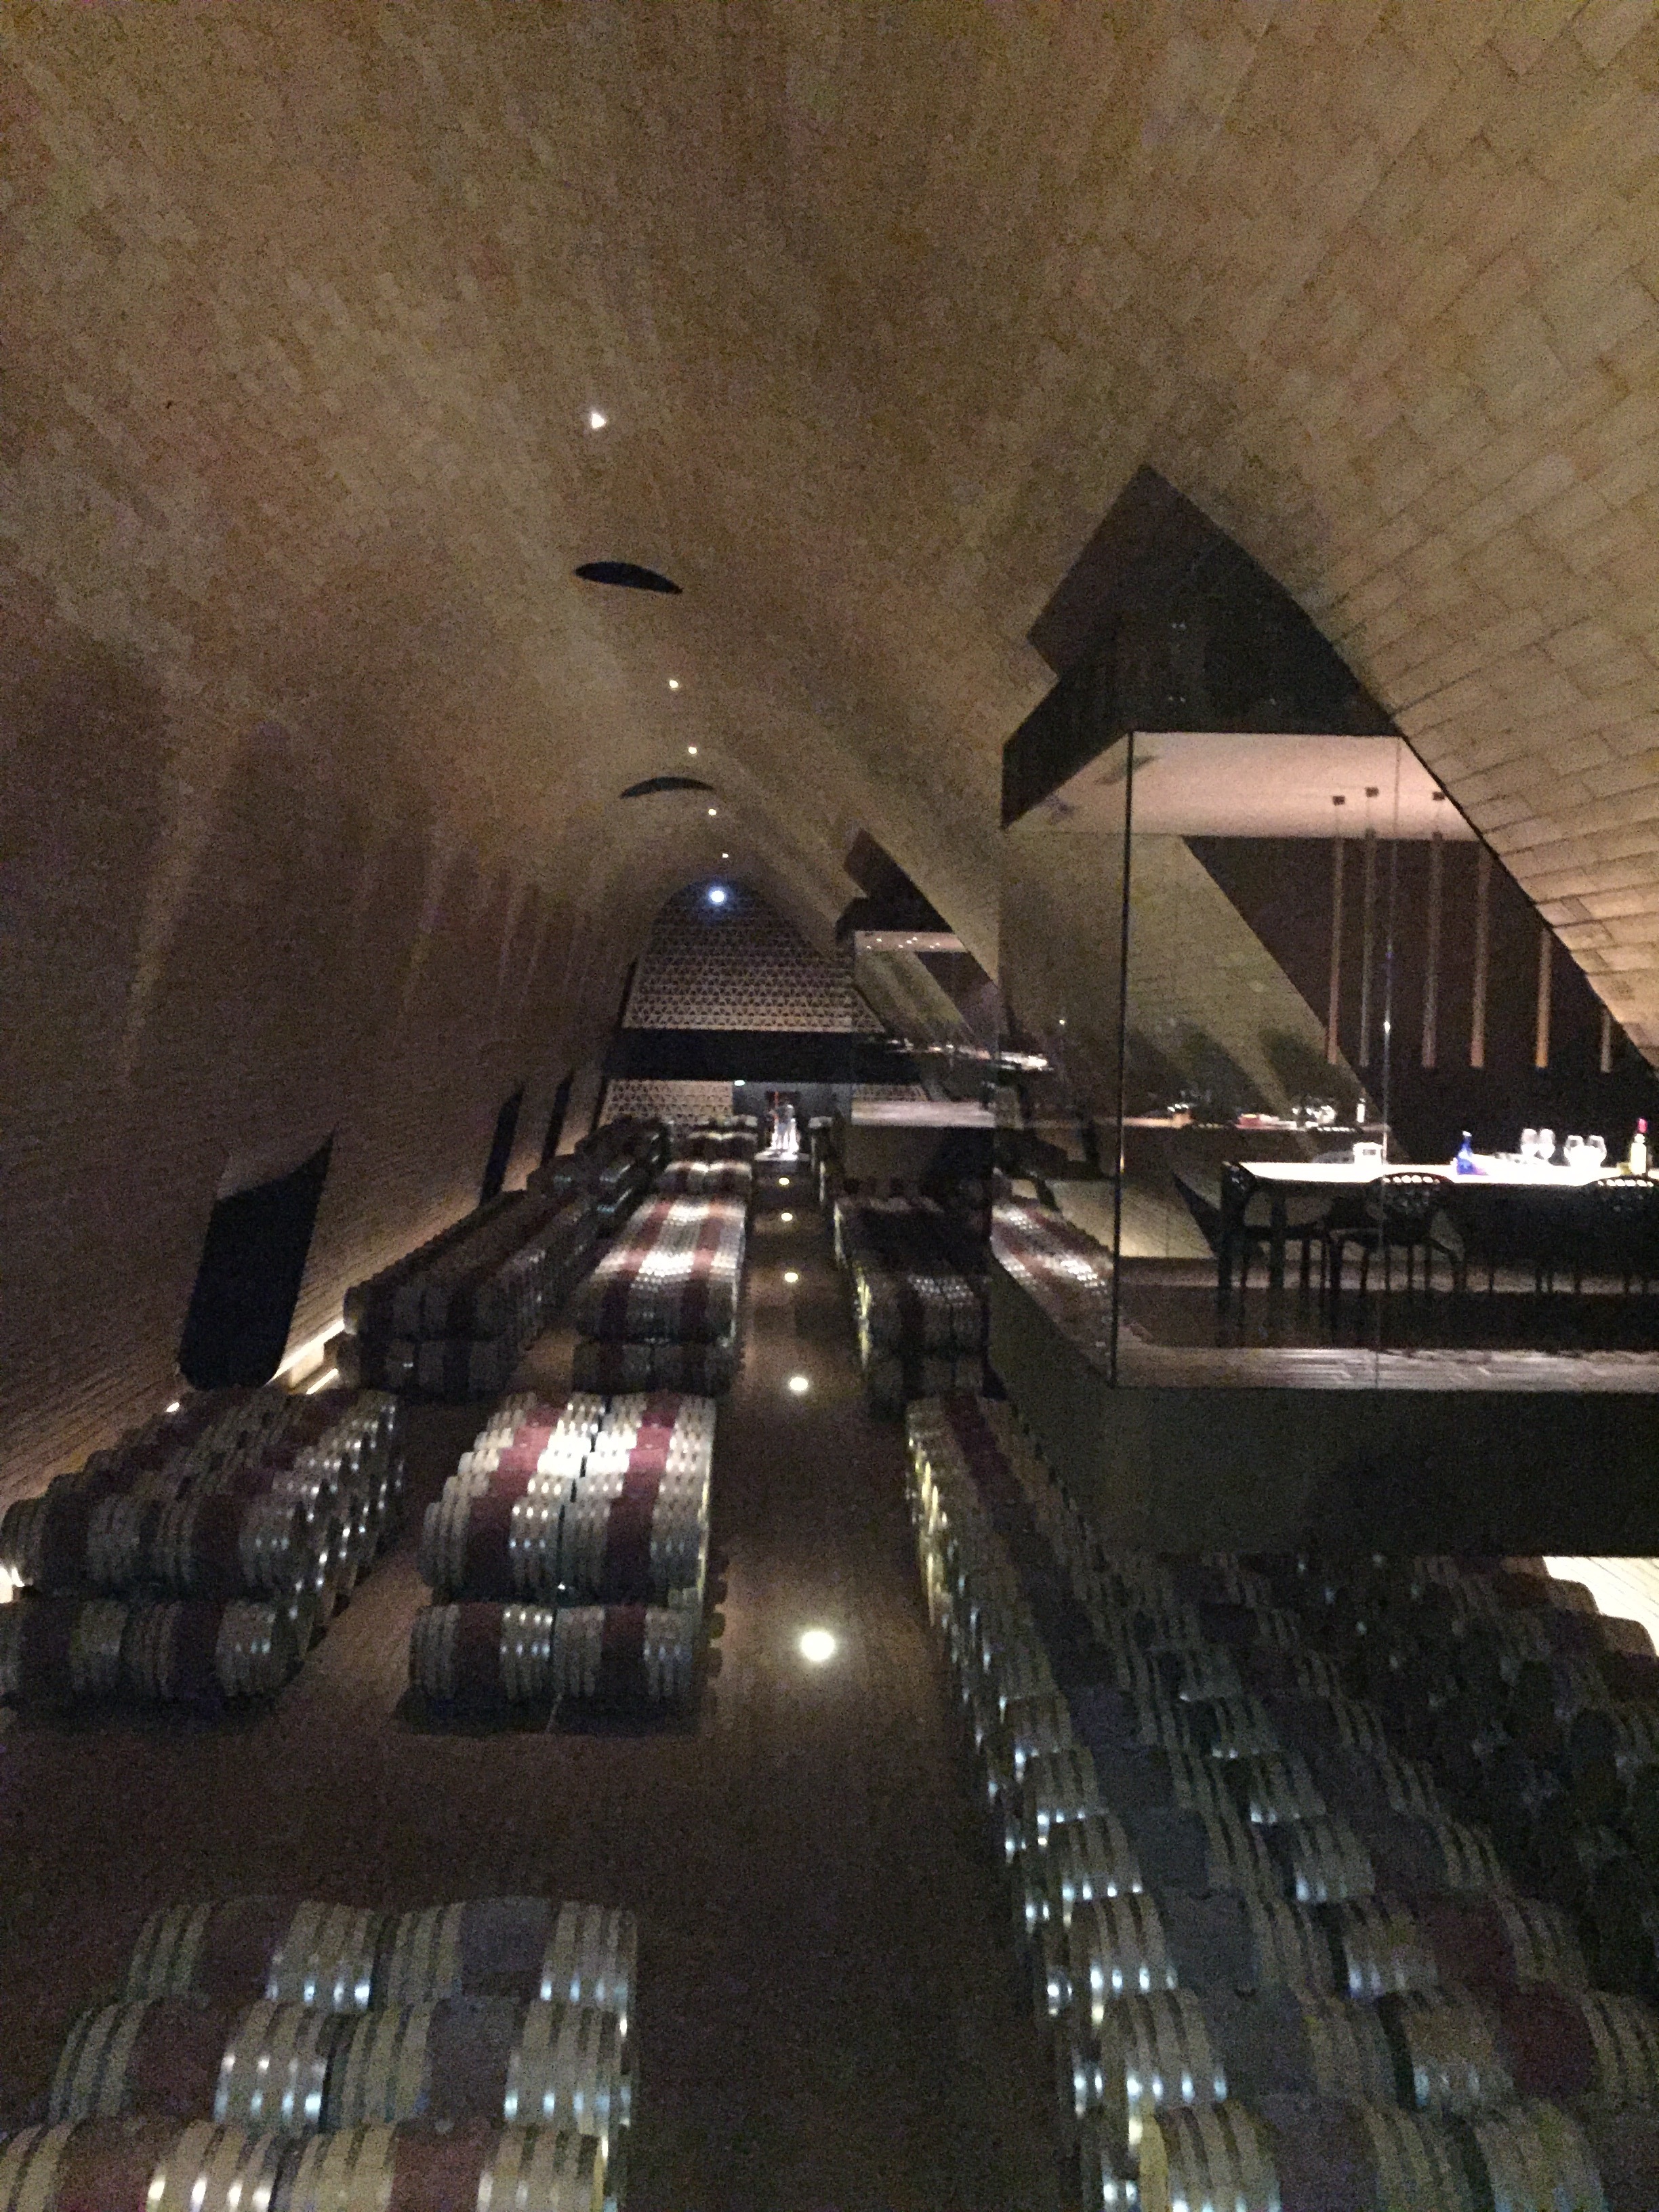 Antinori winery cellar